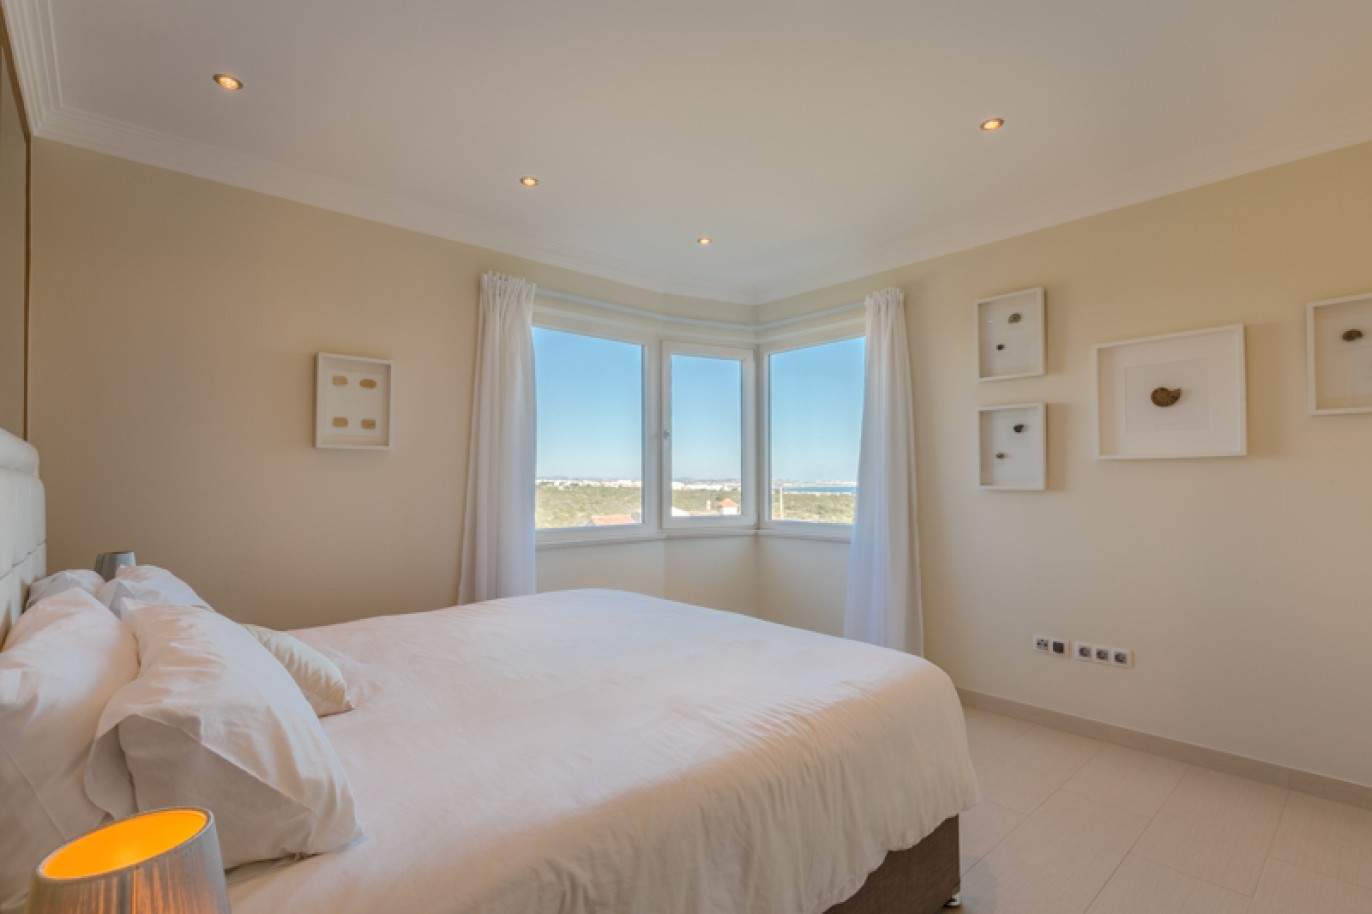 Moradia à venda, com vista mar, perto praia e golfe, Algarve, Portugal_76418